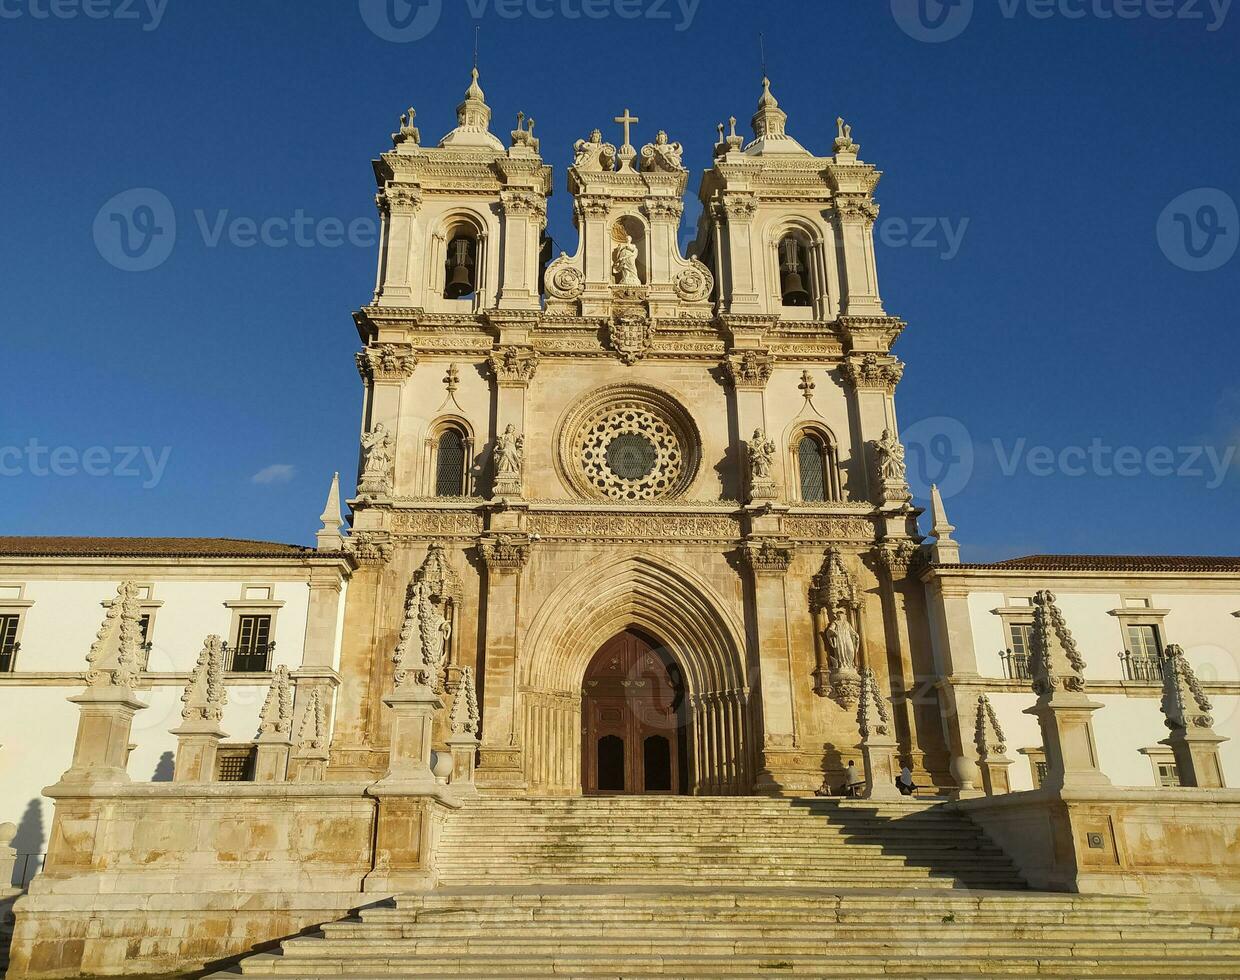 ancien catholique monastère dans gothique Portugais style dans vieux ville de alcobaca dans le Portugal. photo